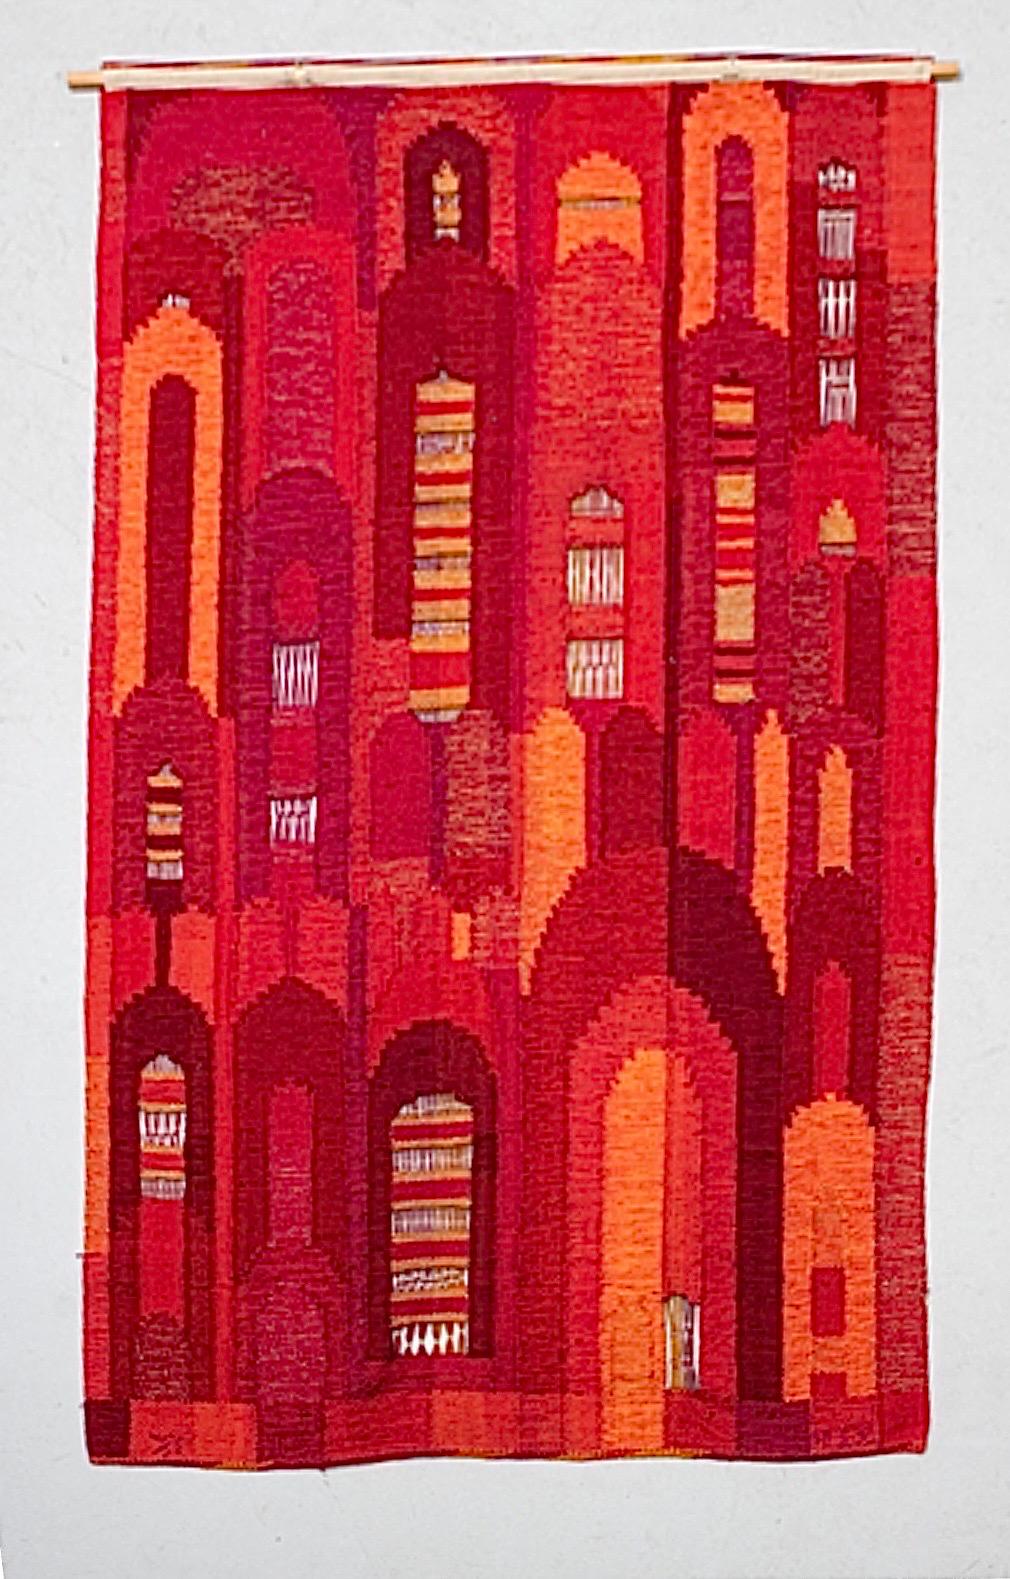 Il s'agit de la grande tapisserie suédoise d'Irma Kronlund, tissée à la main pour Kronoberg Läns Hemslöjd, mesurant majestueusement 90x56 in (229x142 cm). 

Il se décline dans une belle gamme de couleurs rouge et orange et ce magnifique motif